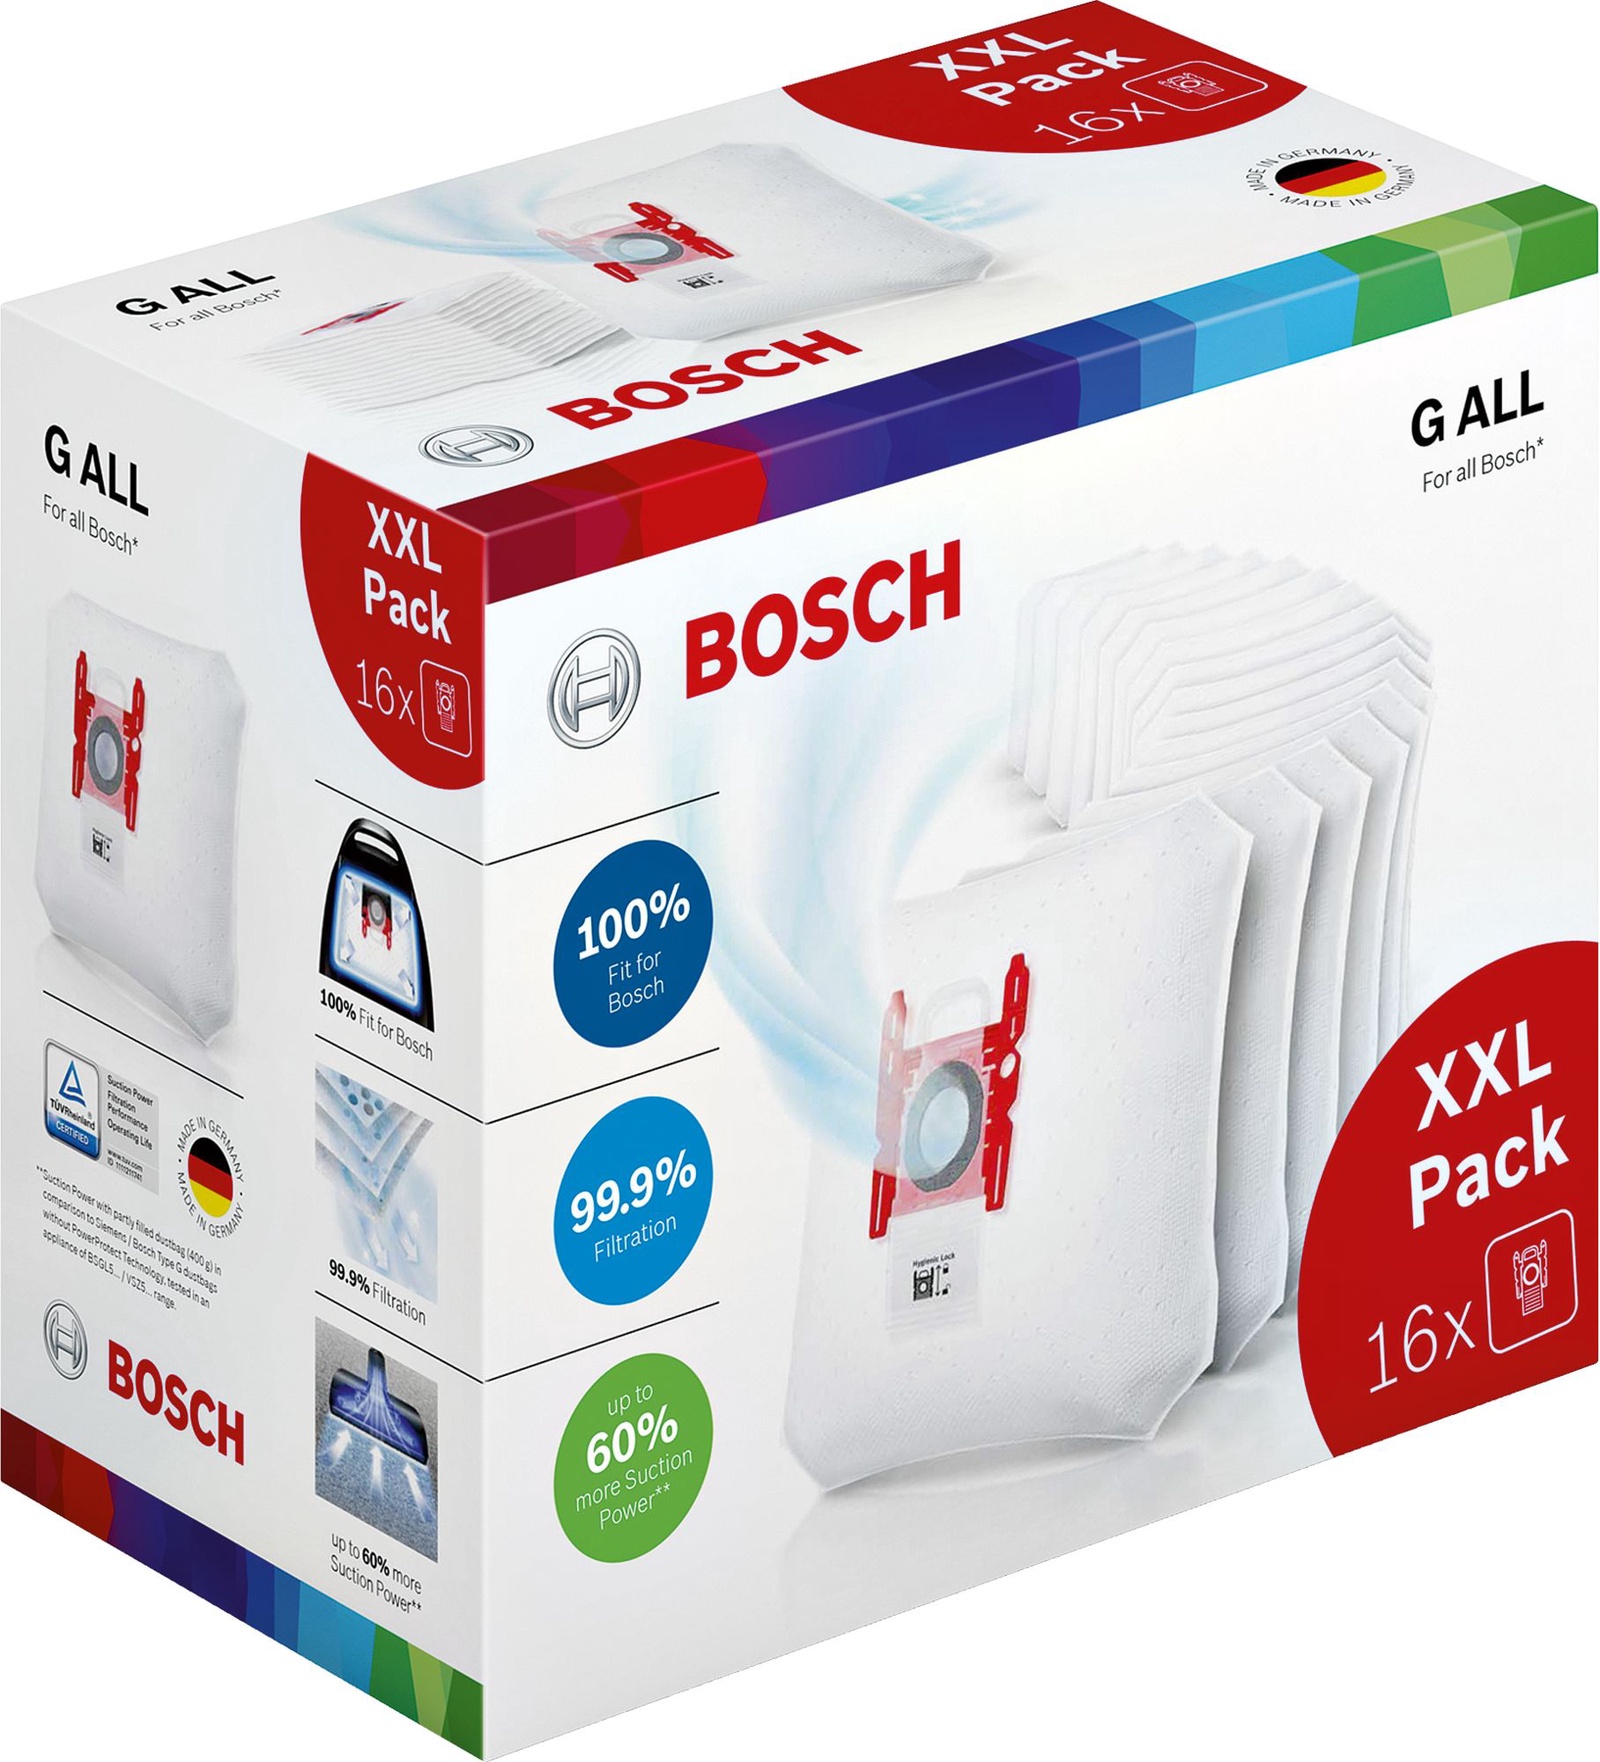 фото Мешок для пылесоса Bosch BBZ16GALL, тип "G ALL", 16 шт. 17002095, BBZ16GALL Bosch gmbh